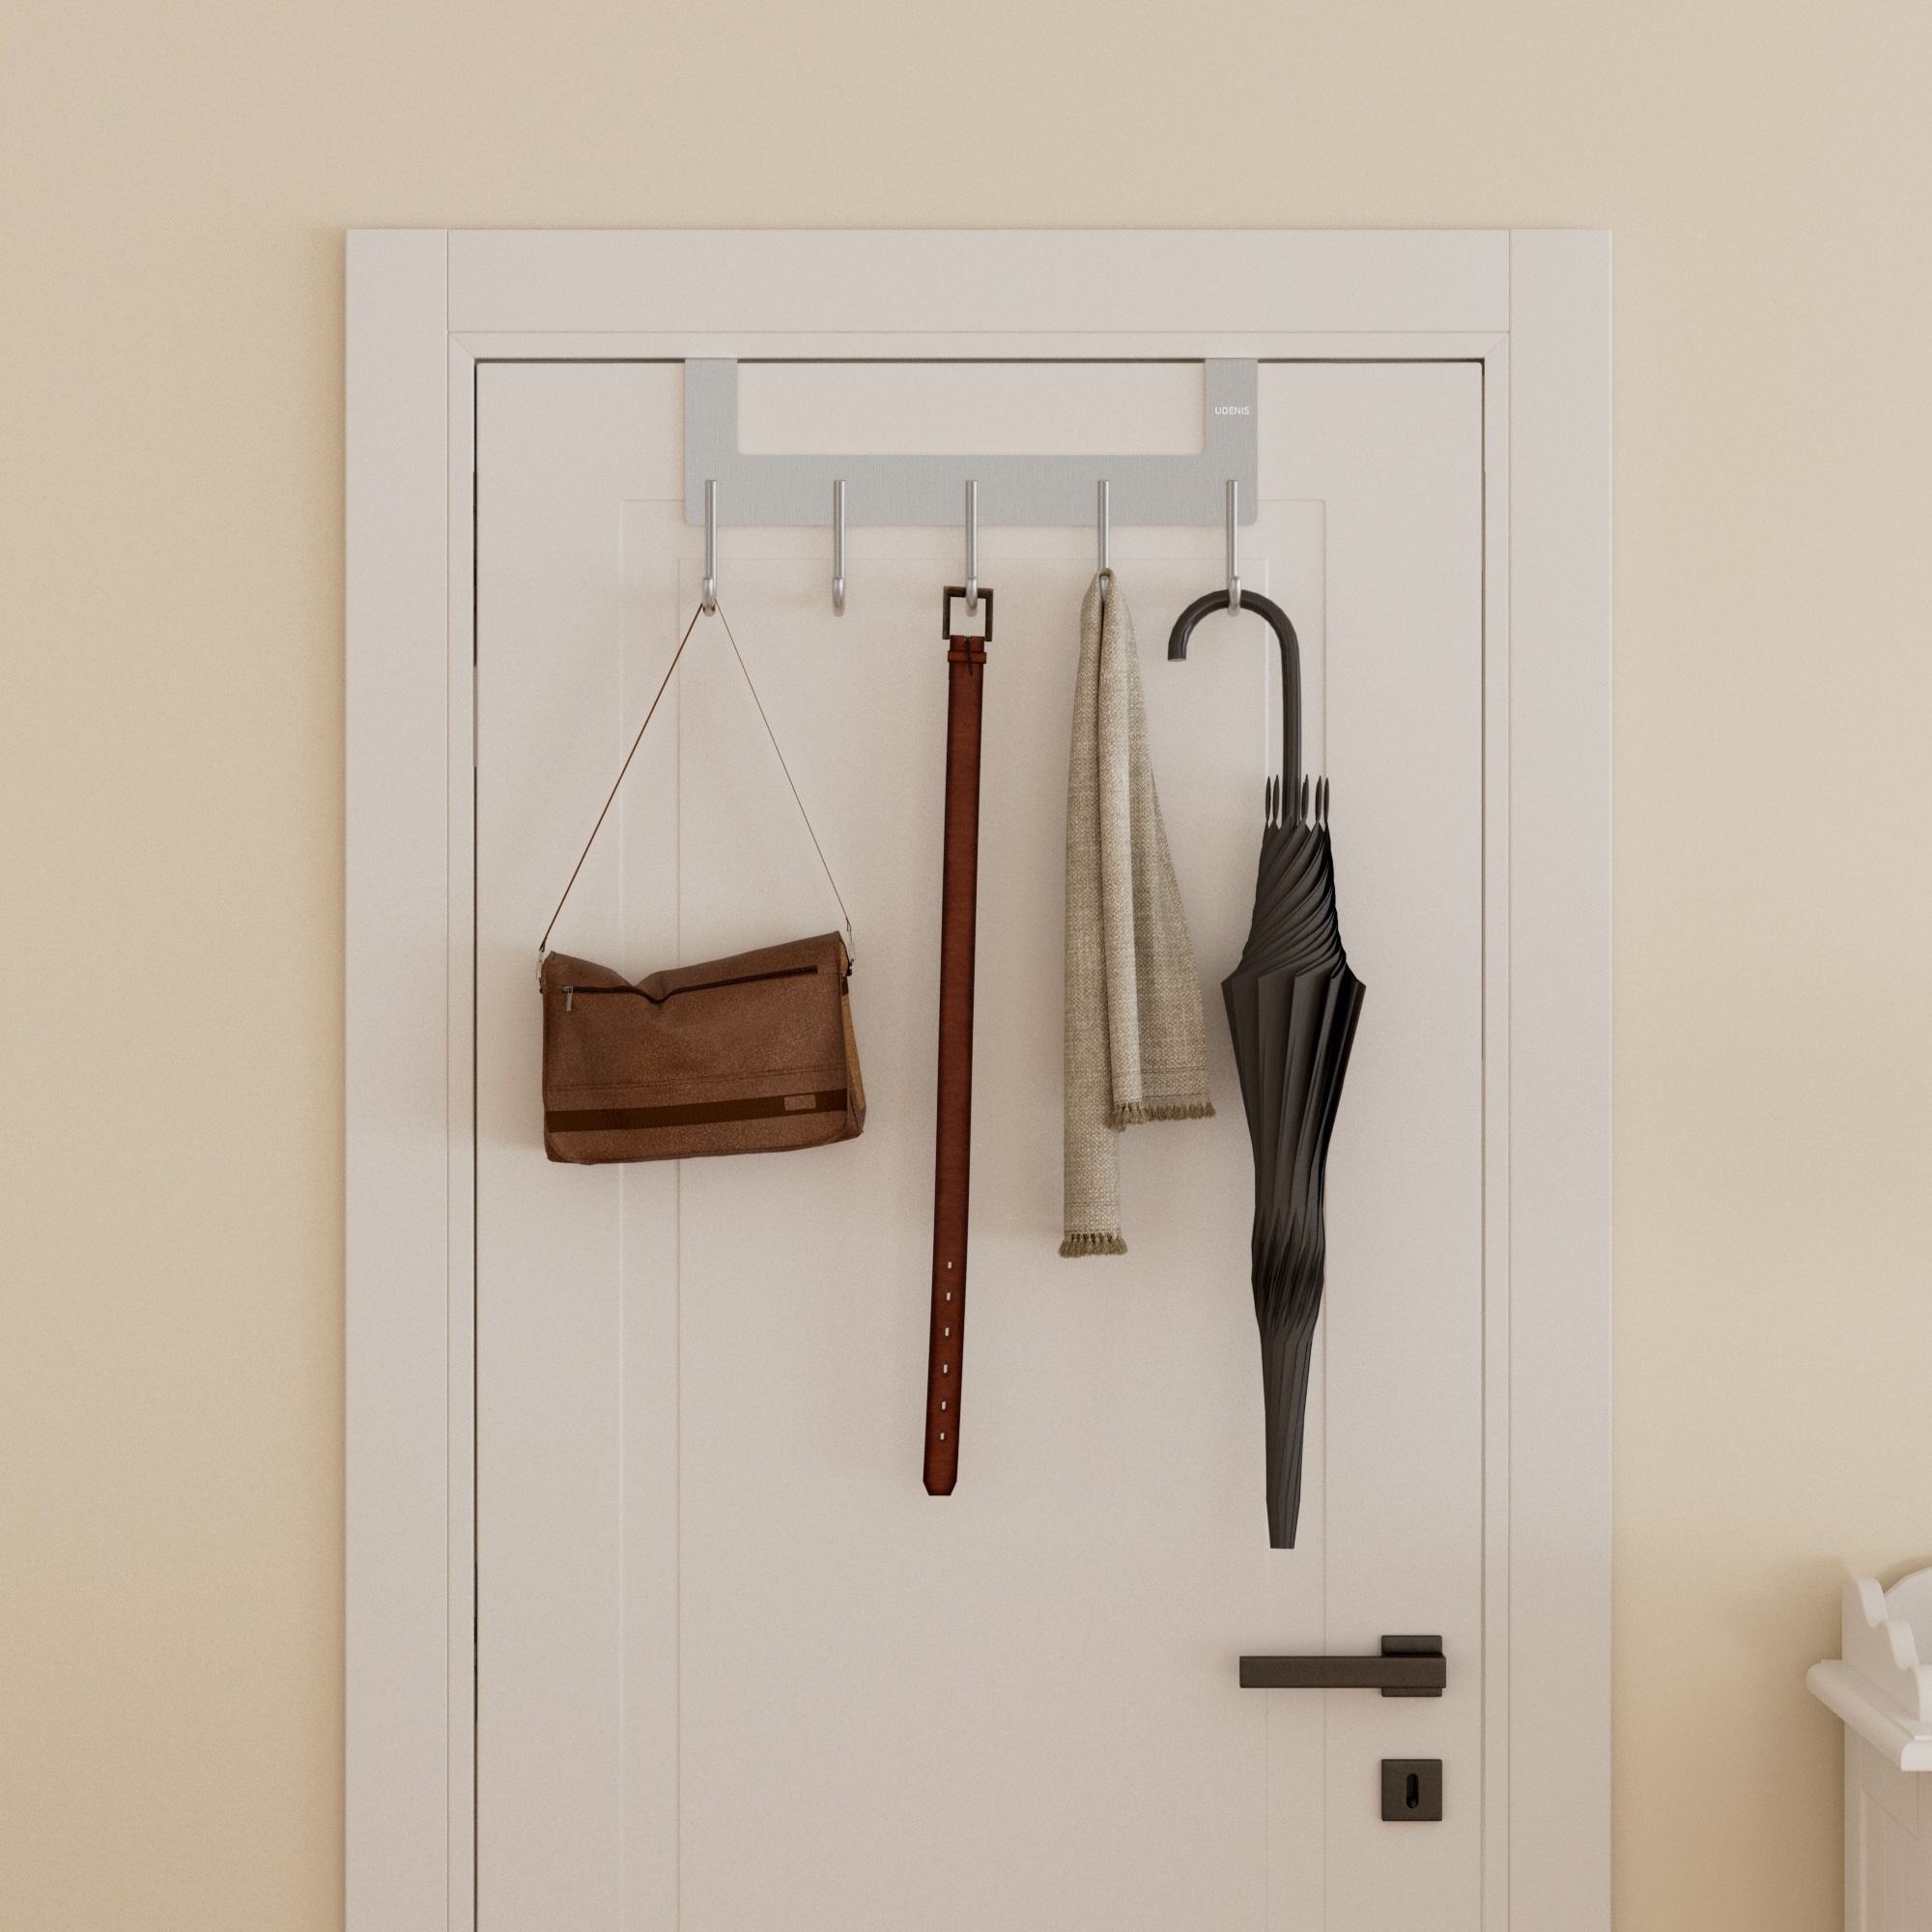 ACMETOP Over The Door Hooks, Aluminum Door Hanger Hook with 5 Coat Hooks  for Hanging, Heavy Duty Over The Door Coat Rack for Towel, Bag, Robe, Back  of